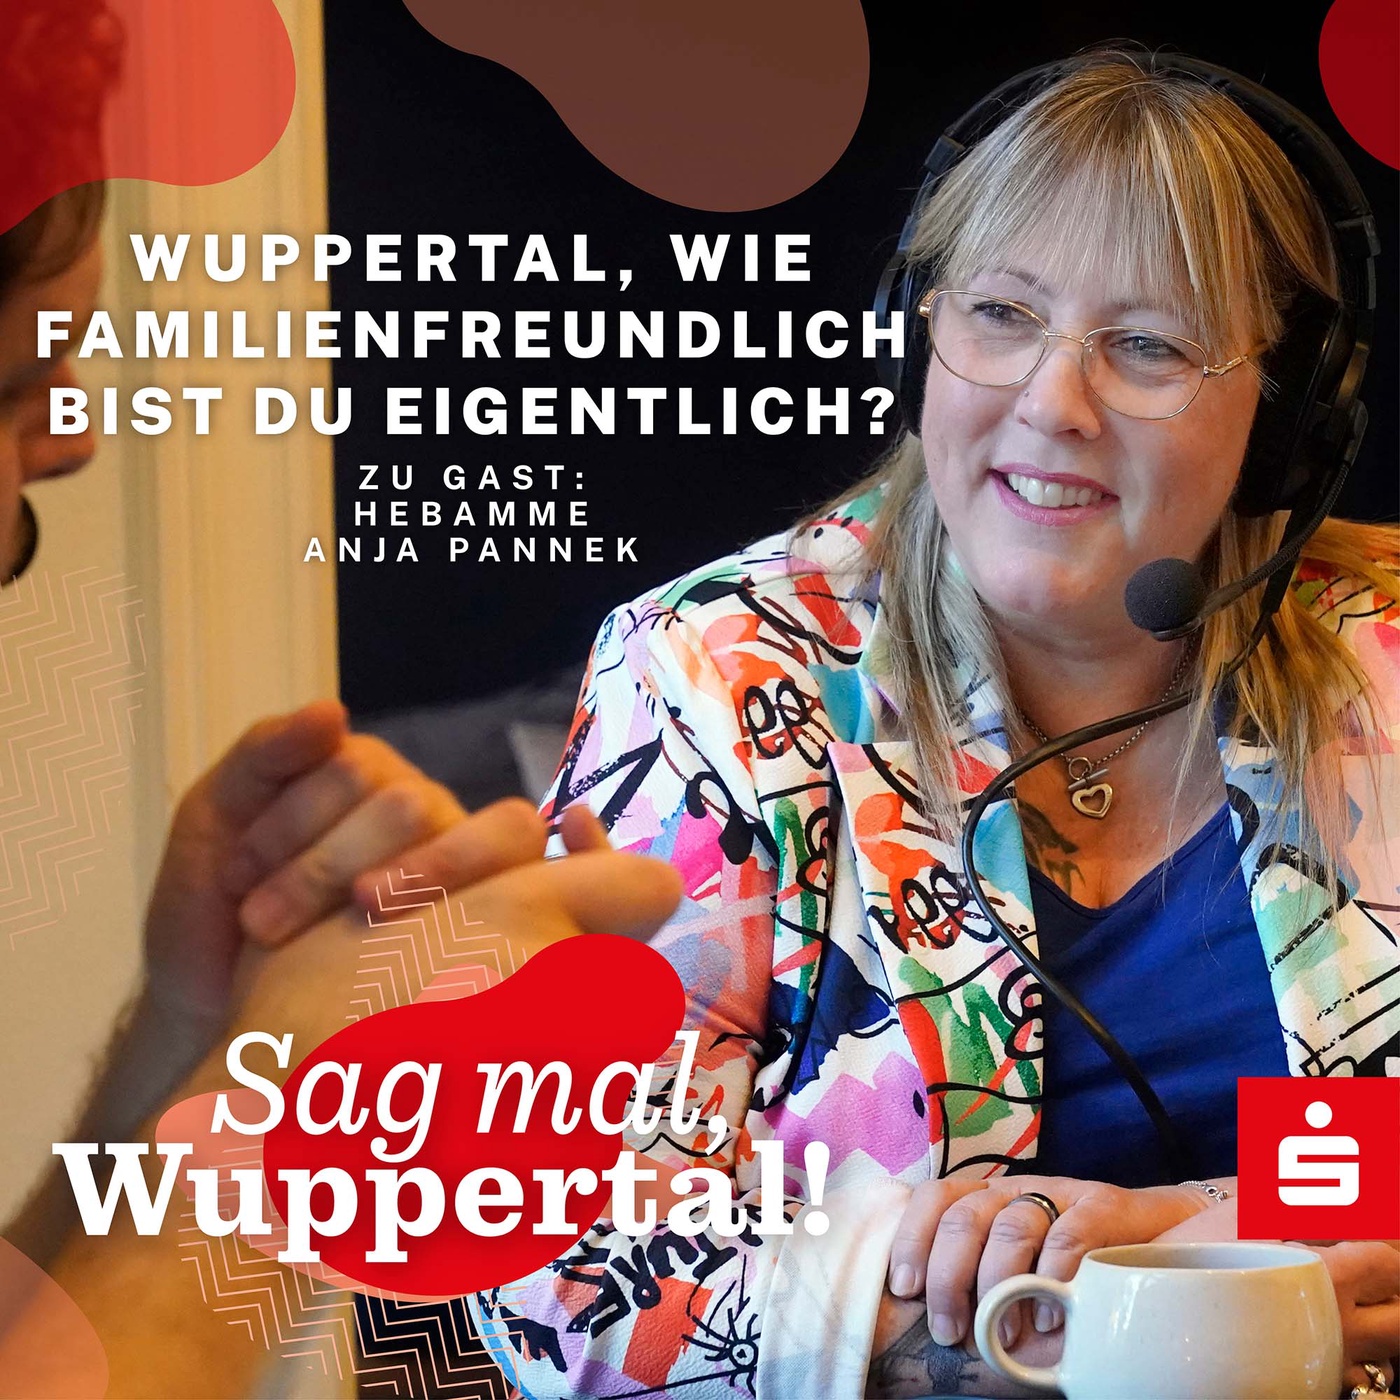 Sag mal, Wuppertal! Wie familienfreundlich bist du eigentlich?